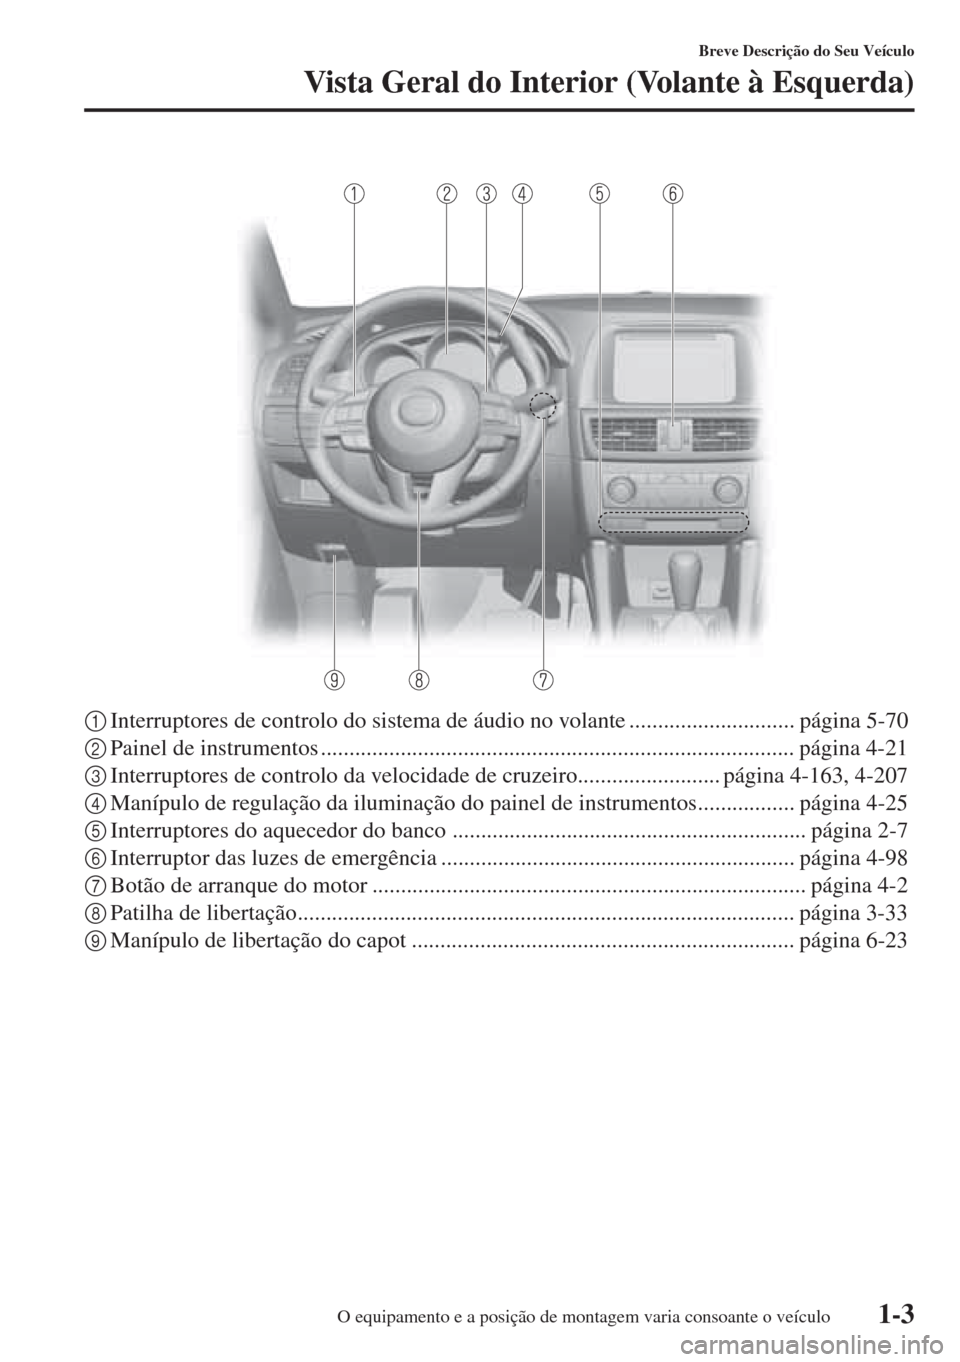 MAZDA MODEL CX-5 2015  Manual do proprietário (in Portuguese) 1-3
Breve Descrição do Seu Veículo
Vista Geral do Interior (Volante à Esquerda)
1Interruptores de controlo do sistema de áudio no volante ............................. página 5-70
2Painel de ins